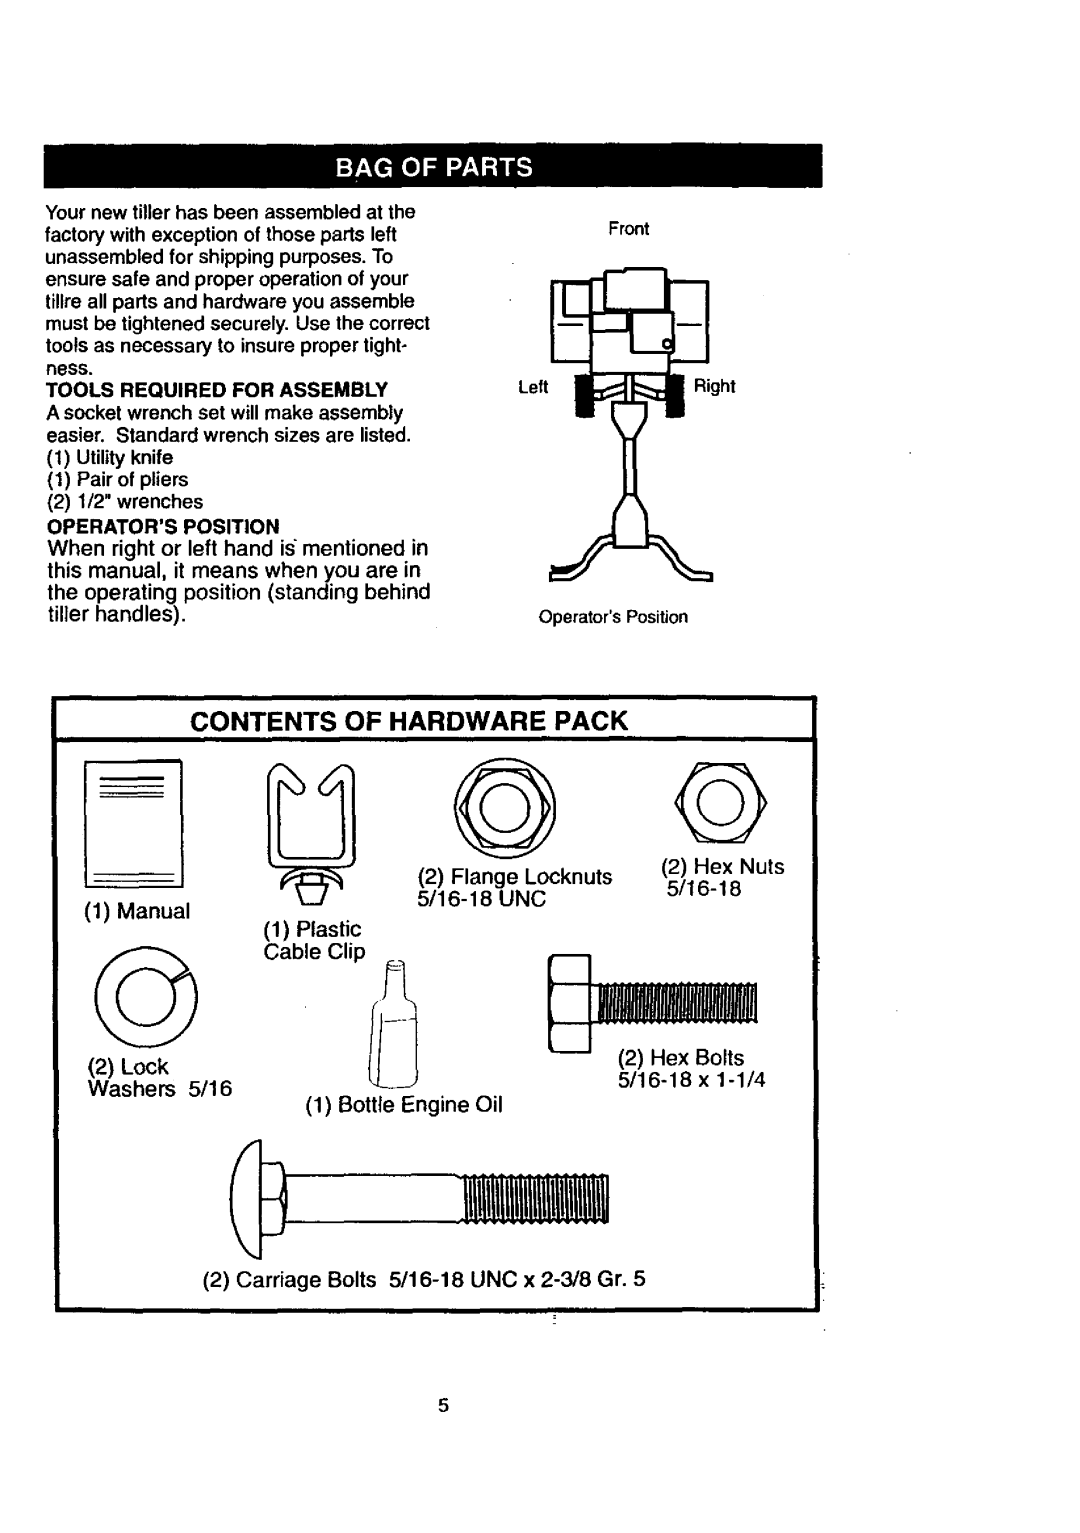 Craftsman 917.29239 owner manual Contents Of Hardware Pack, tiller handles, Manual, Bottle Engine Oil 